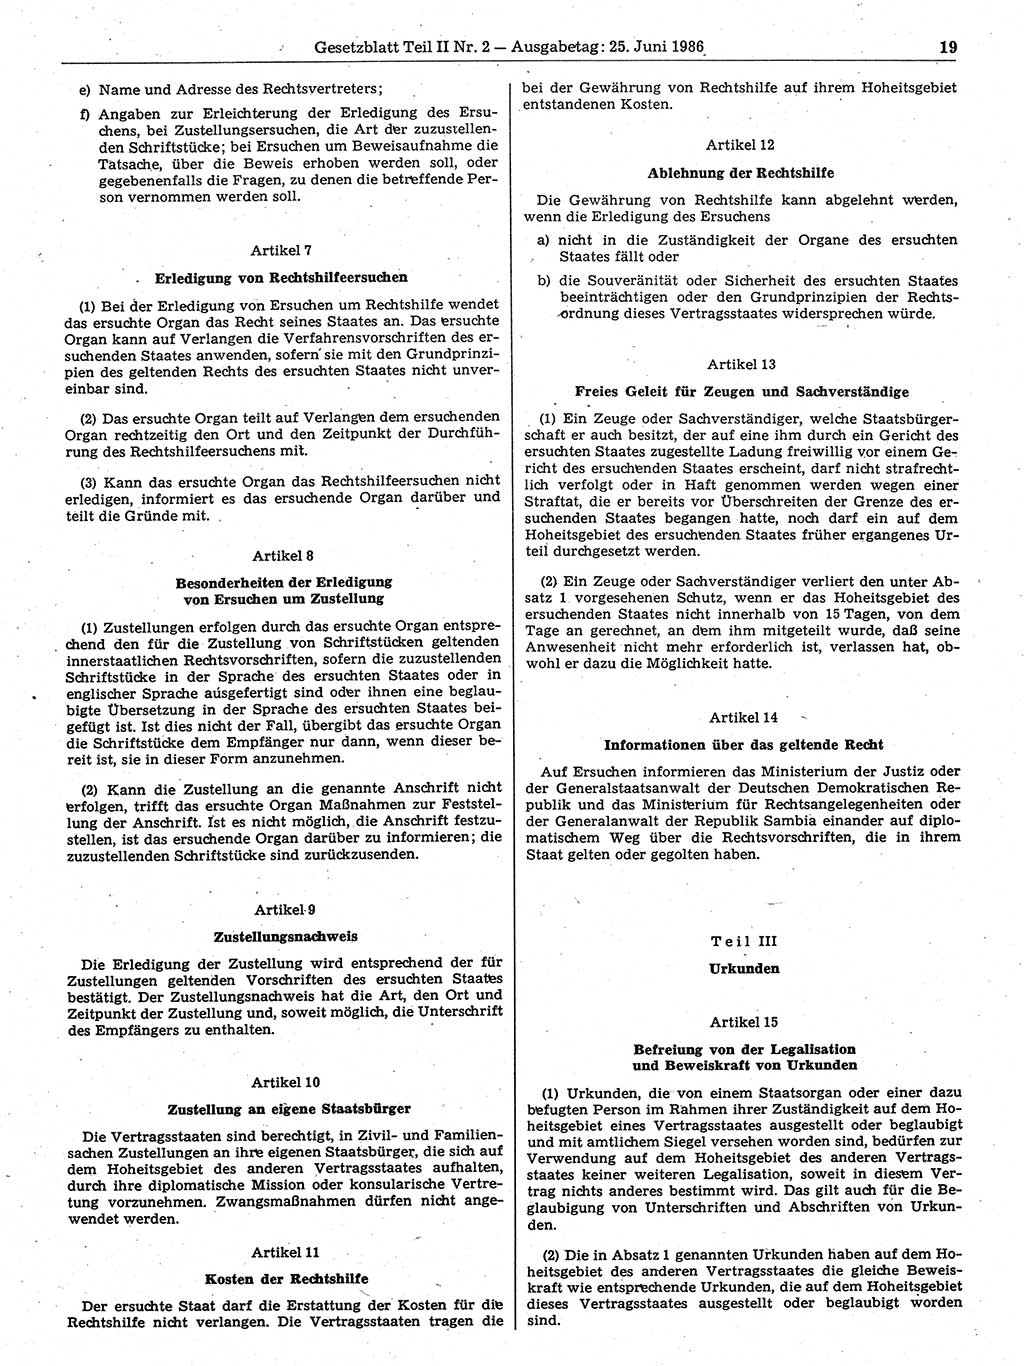 Gesetzblatt (GBl.) der Deutschen Demokratischen Republik (DDR) Teil ⅠⅠ 1986, Seite 19 (GBl. DDR ⅠⅠ 1986, S. 19)